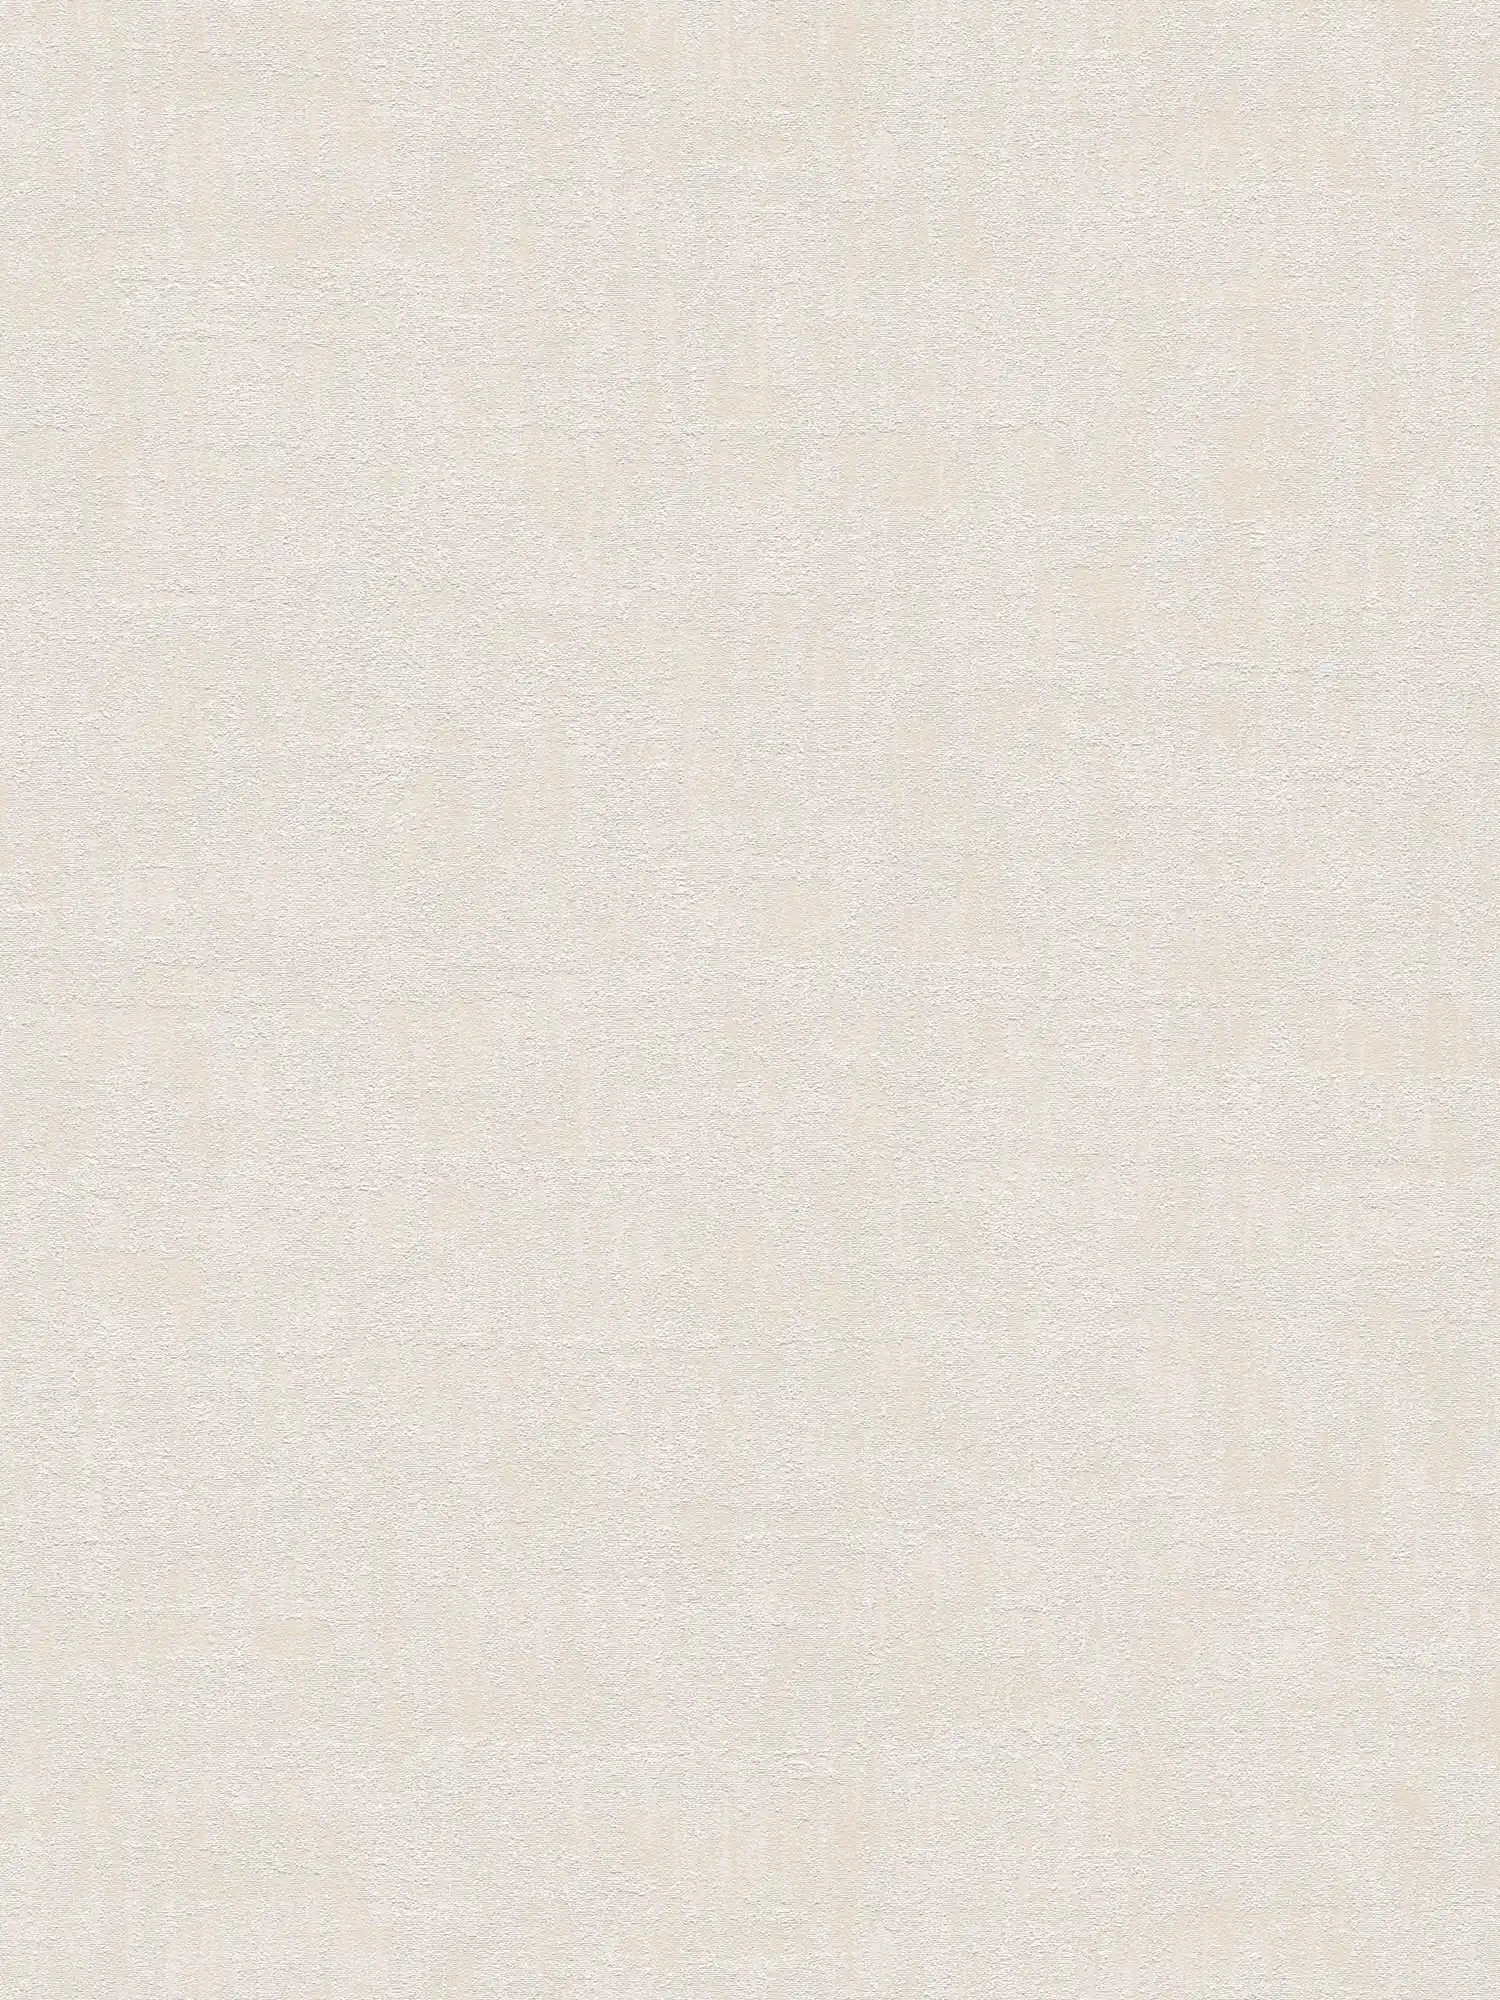 papier peint en papier à motifs de raphia dans des couleurs douces - crème, beige
